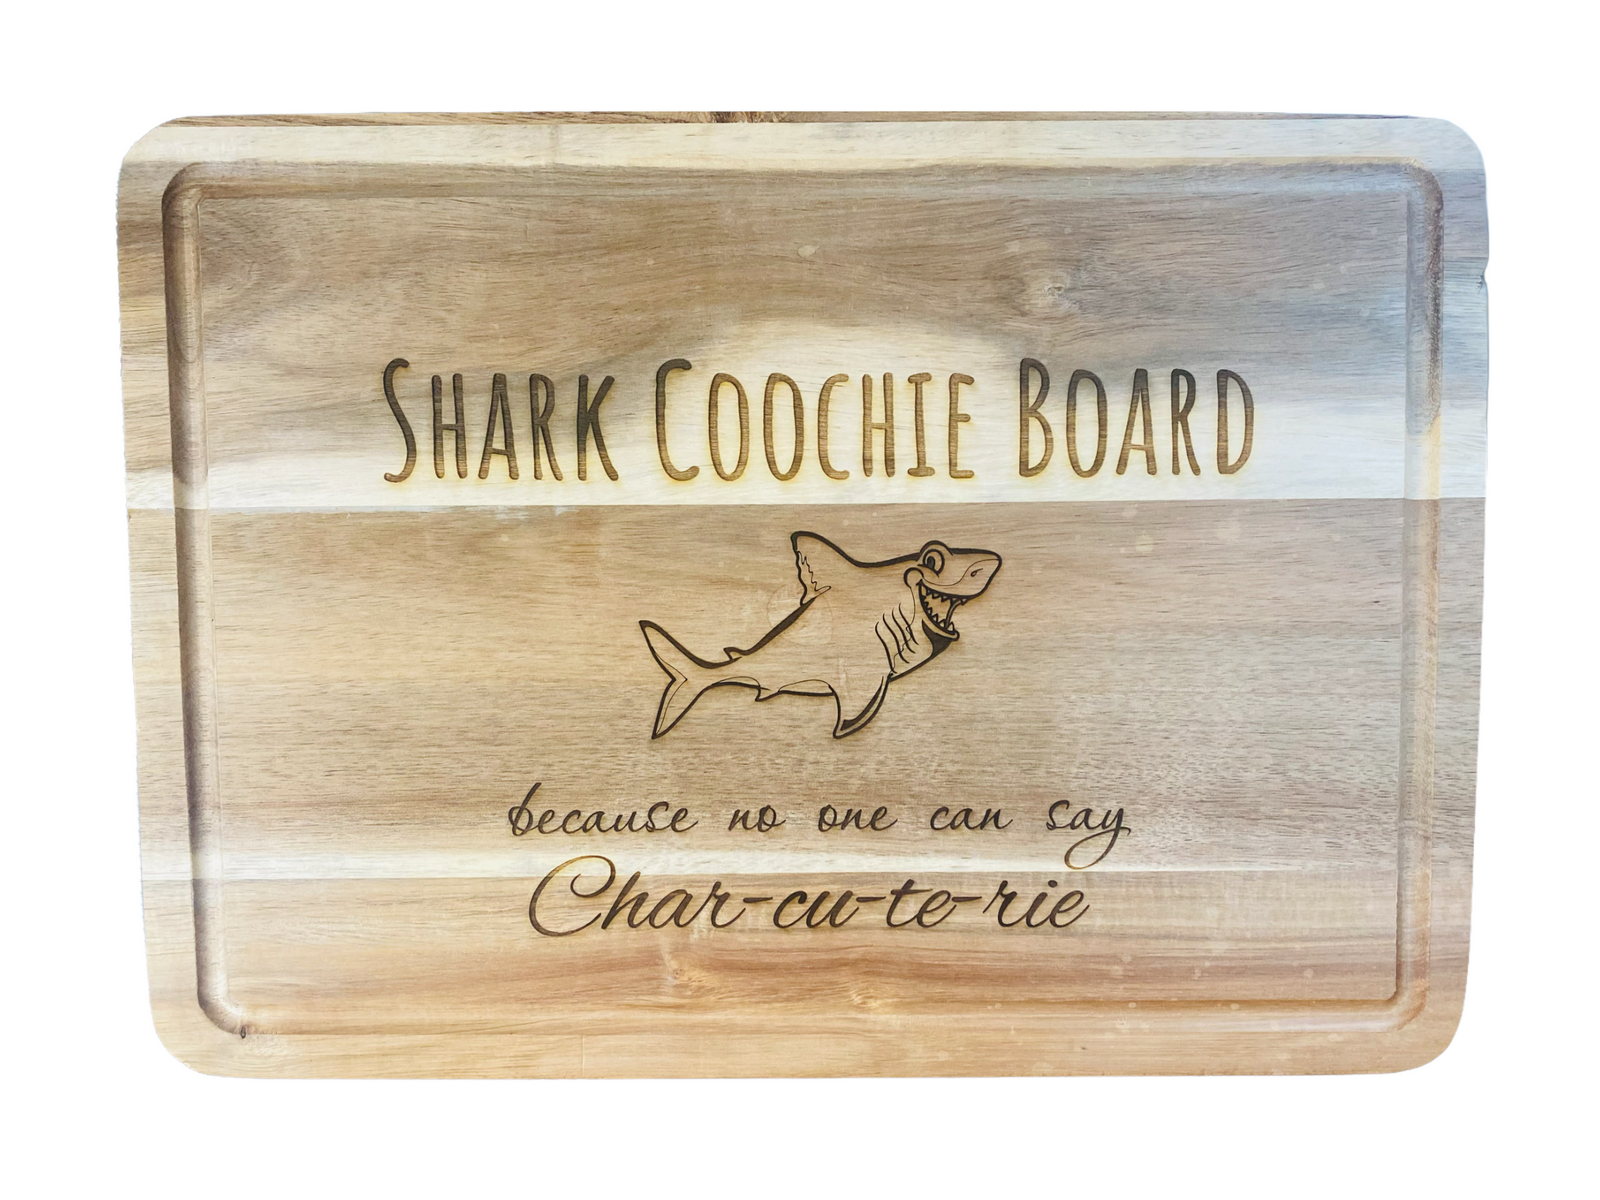 Shark-Coochie Board